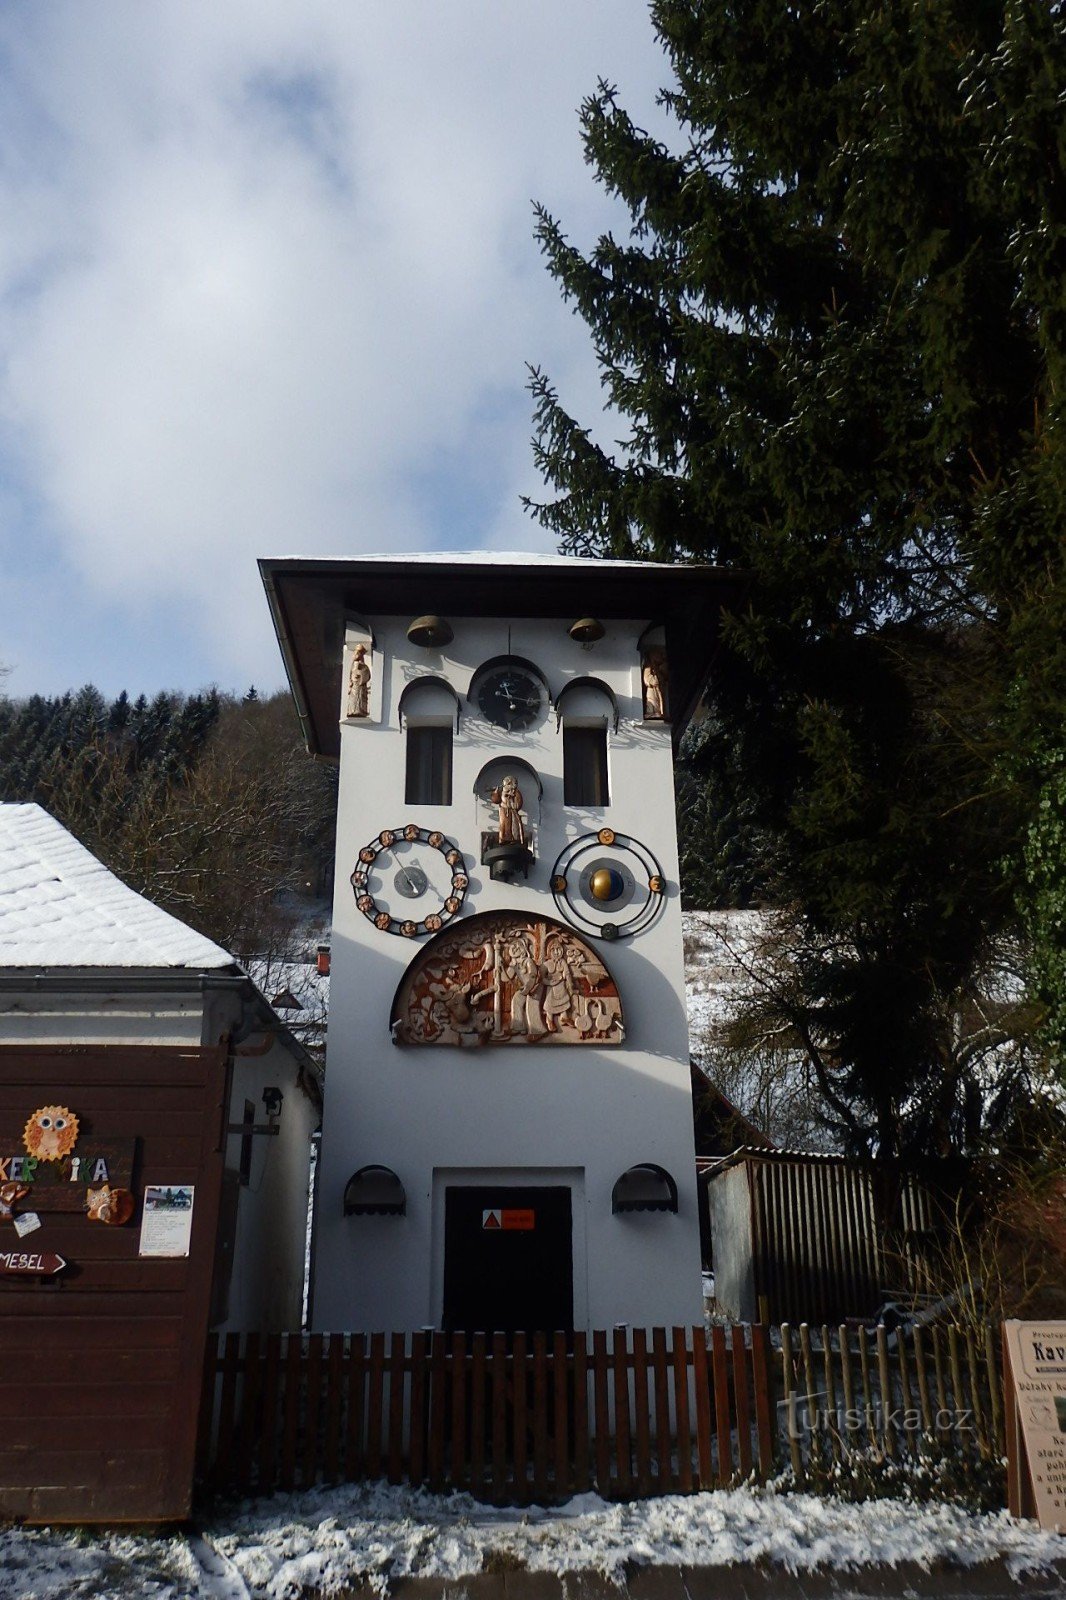 Bảo tàng Chúa giáng sinh-Kryštofovo údolí